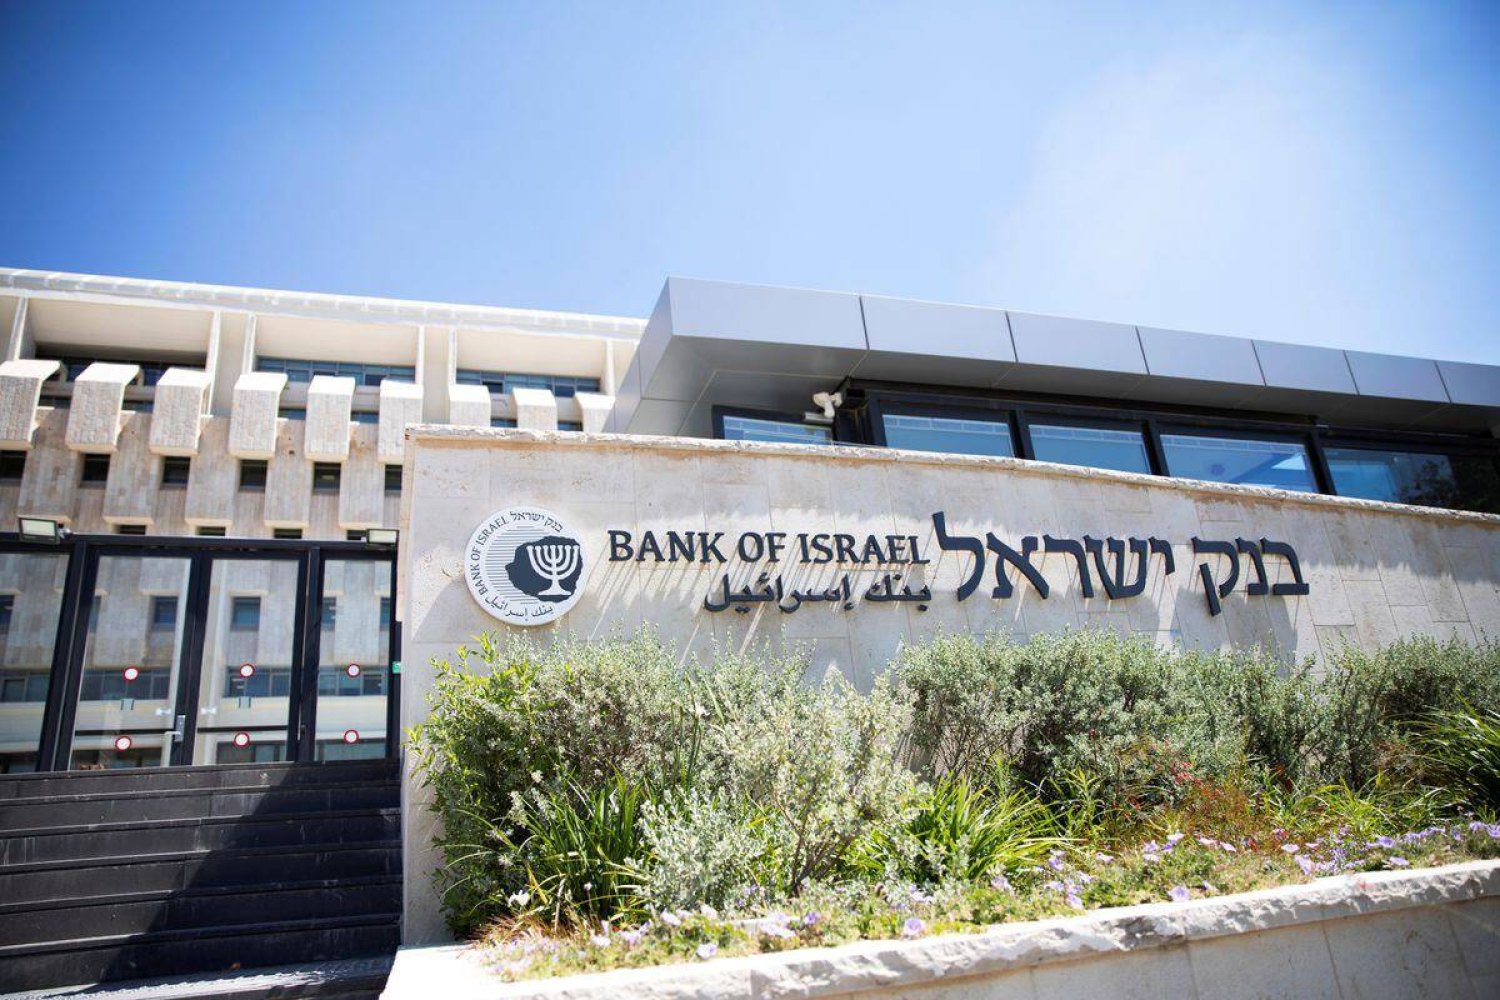 أبقى بنك إسرائيل أسعار الفائدة ثابتة عند 4.5 في المائة يوم الاثنين بعد أن خفضها بمقدار ربع نقطة مئوية في يناير (رويترز)